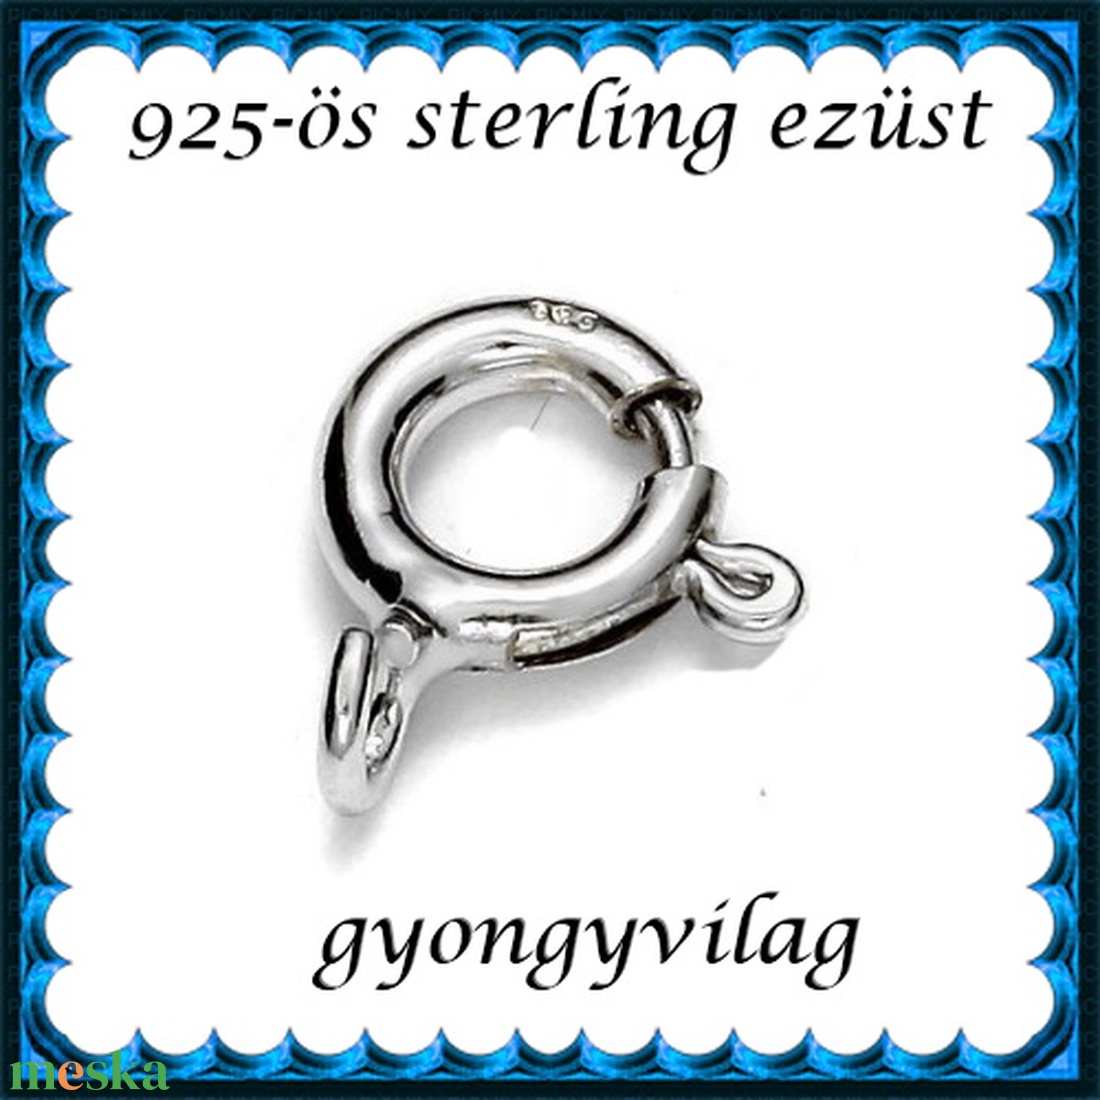 925-ös sterling ezüst ékszerkellék: lánckalocs  ELK 1S 12-10,5 - gyöngy, ékszerkellék - egyéb alkatrész - Meska.hu